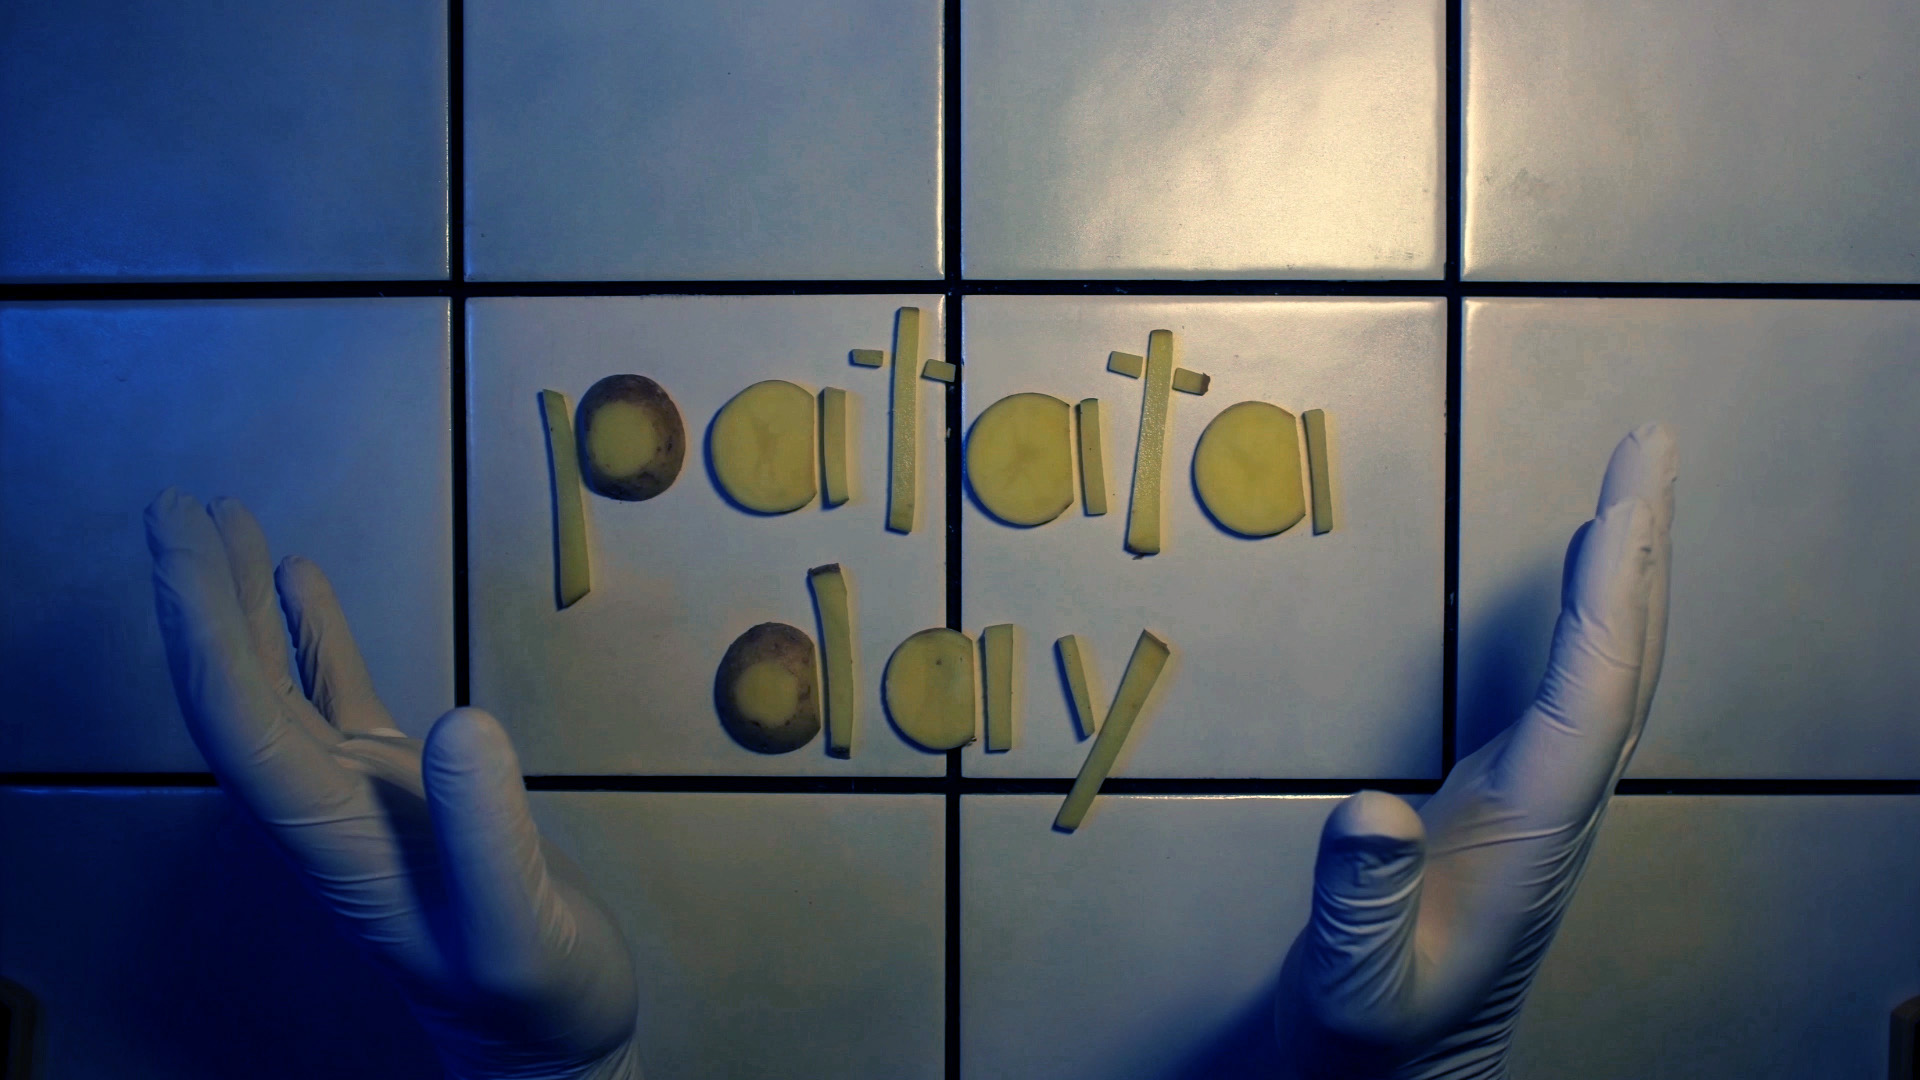 Patata day